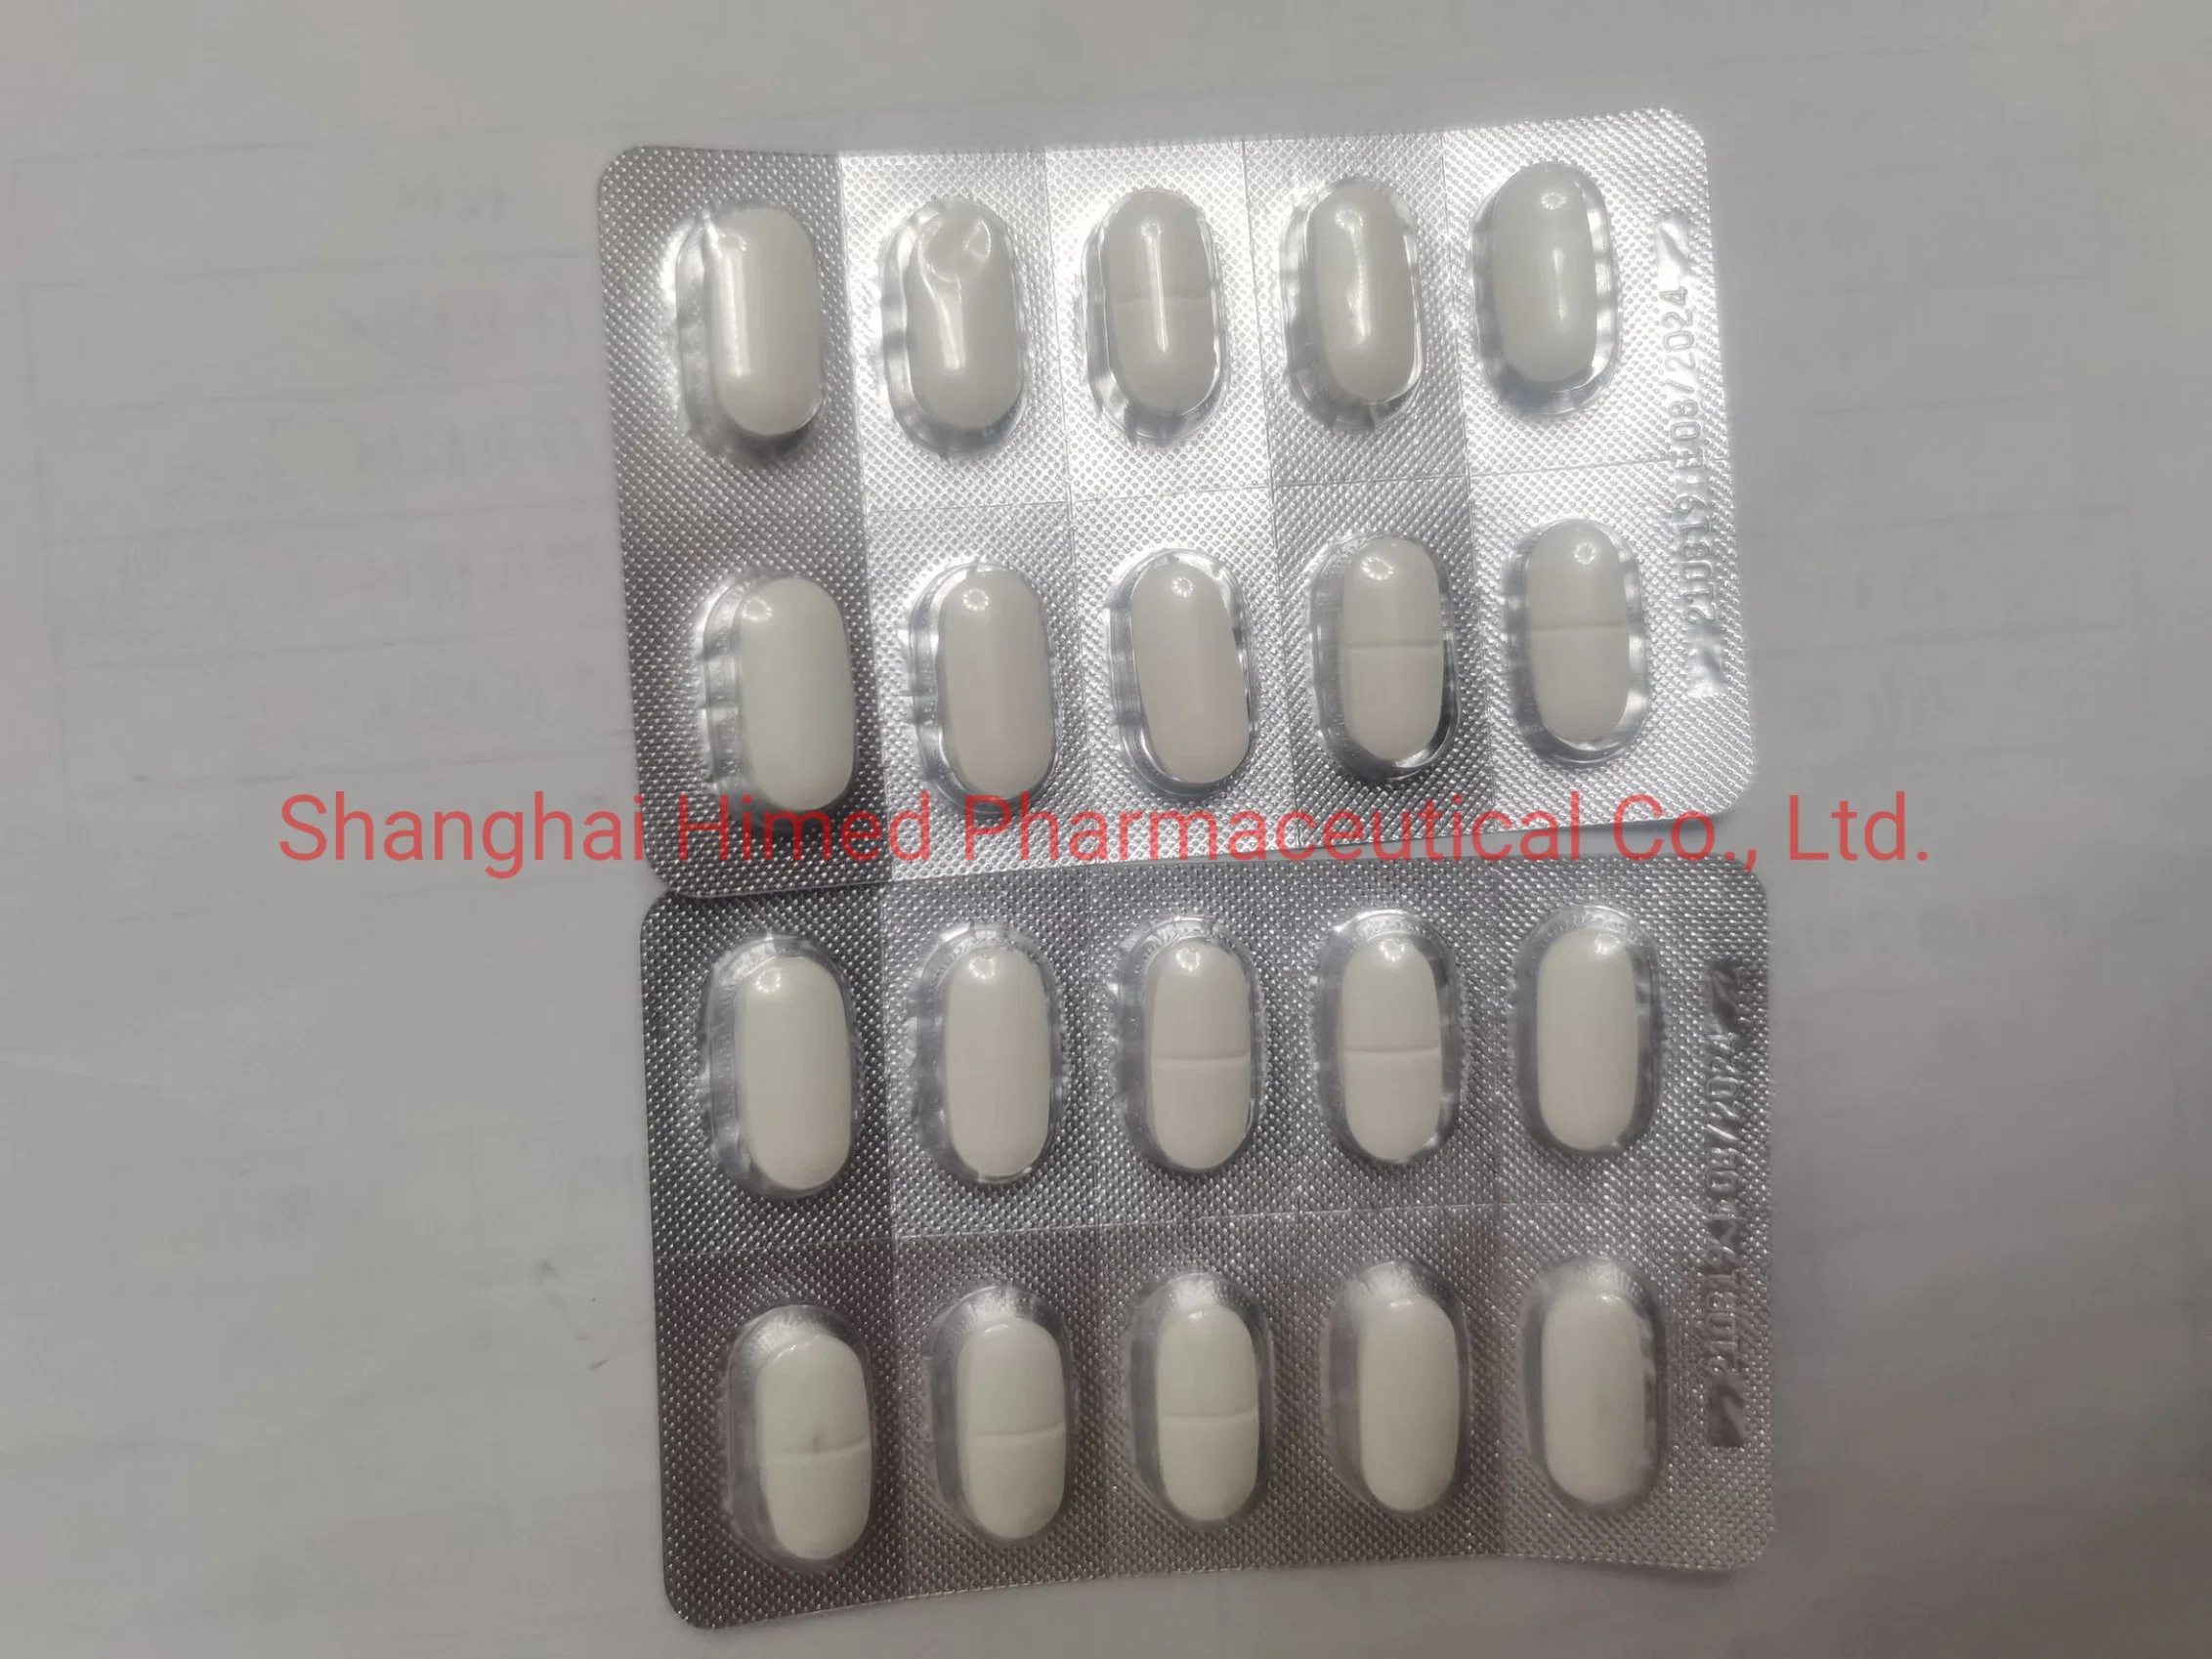 Erlotinib Hydrochloride Tablet 150mg